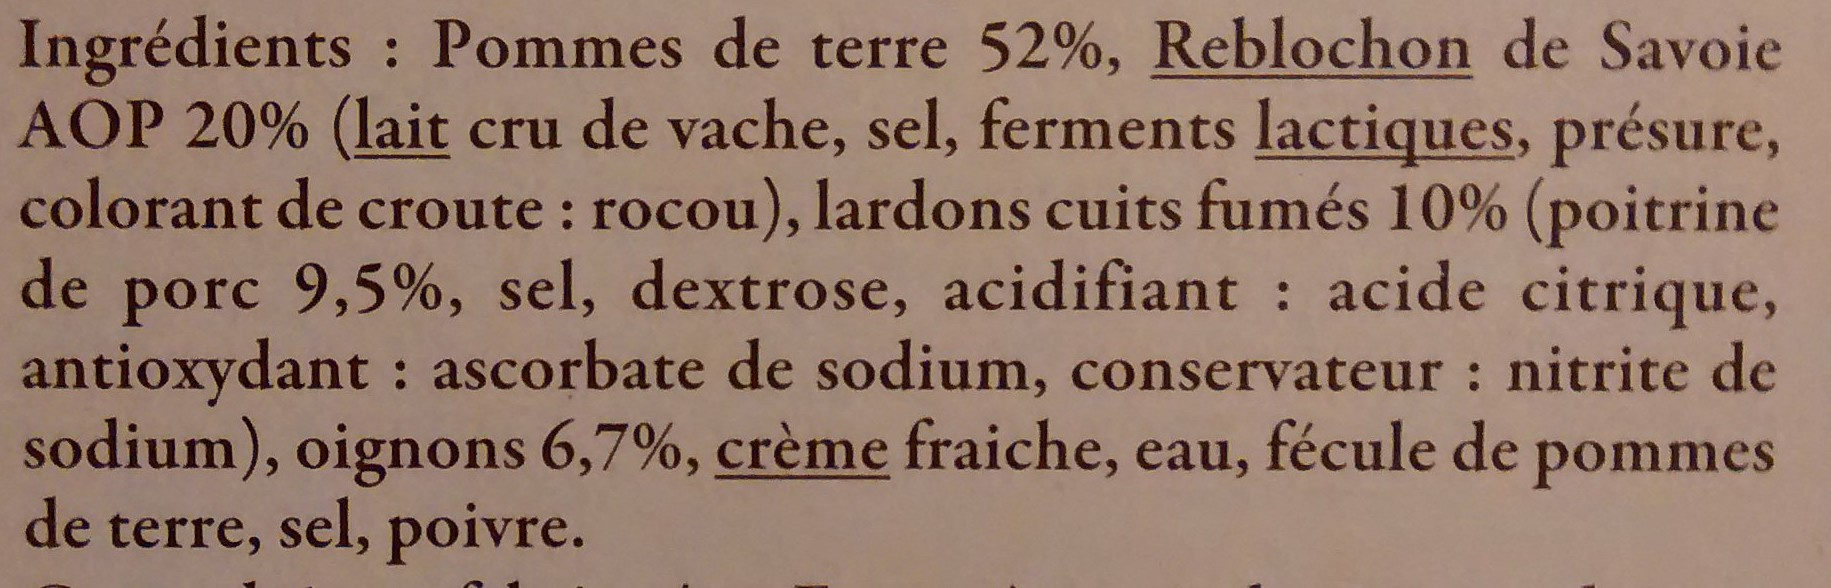 Tartiflette au Reblochon de Savoie Label Rouge - 成分 - fr